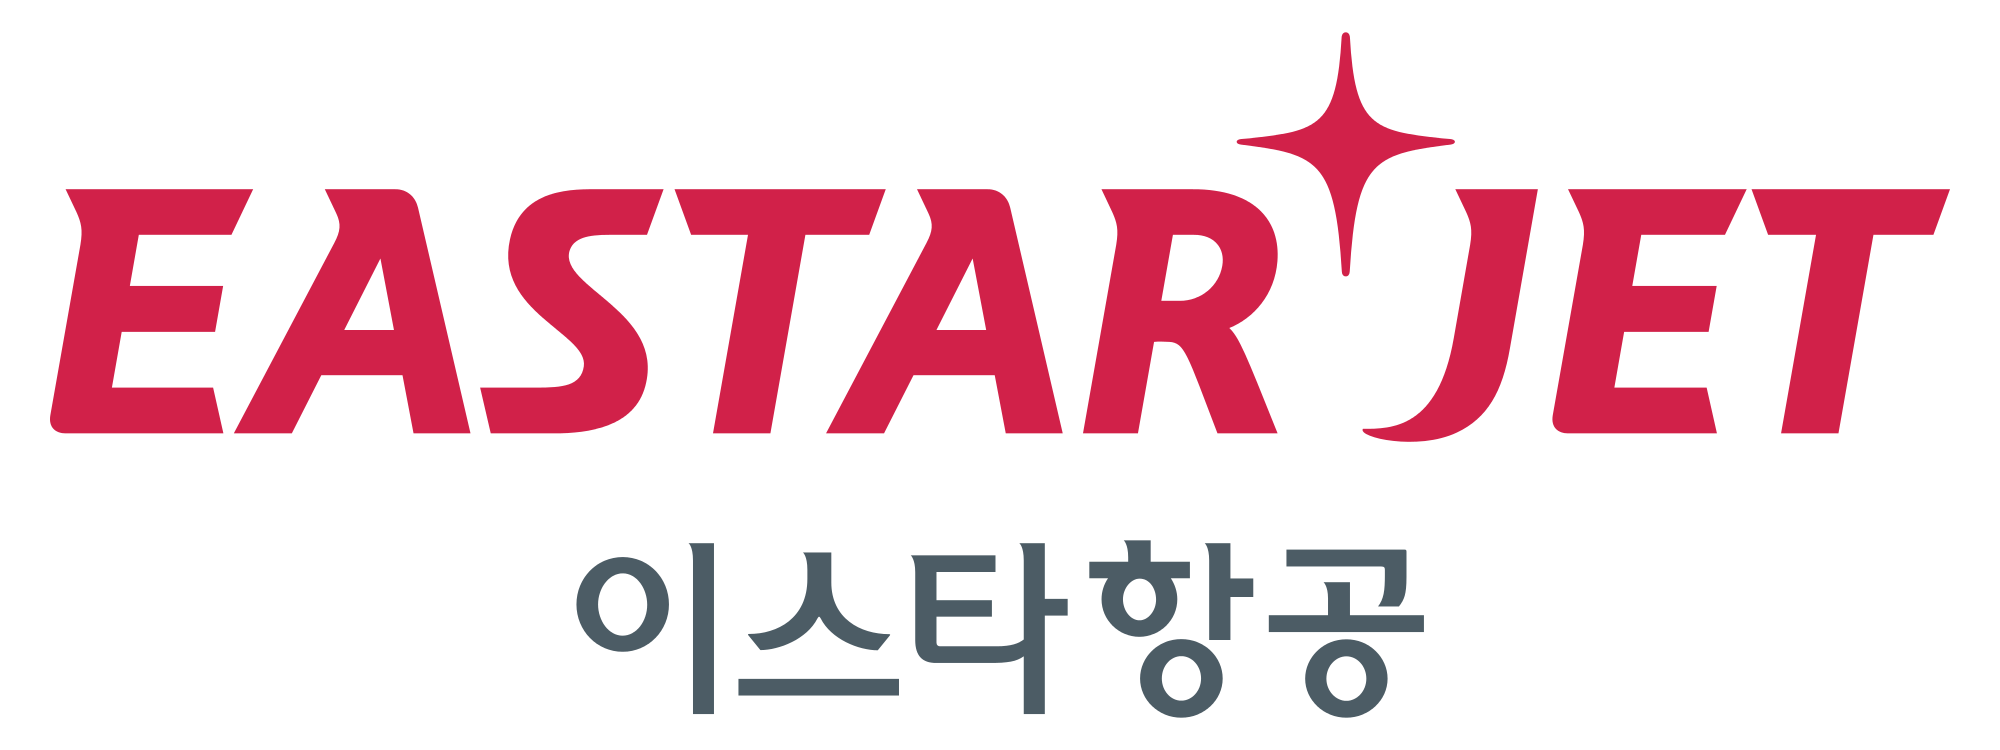 2000px-Eastar_Jet_Logo.svg